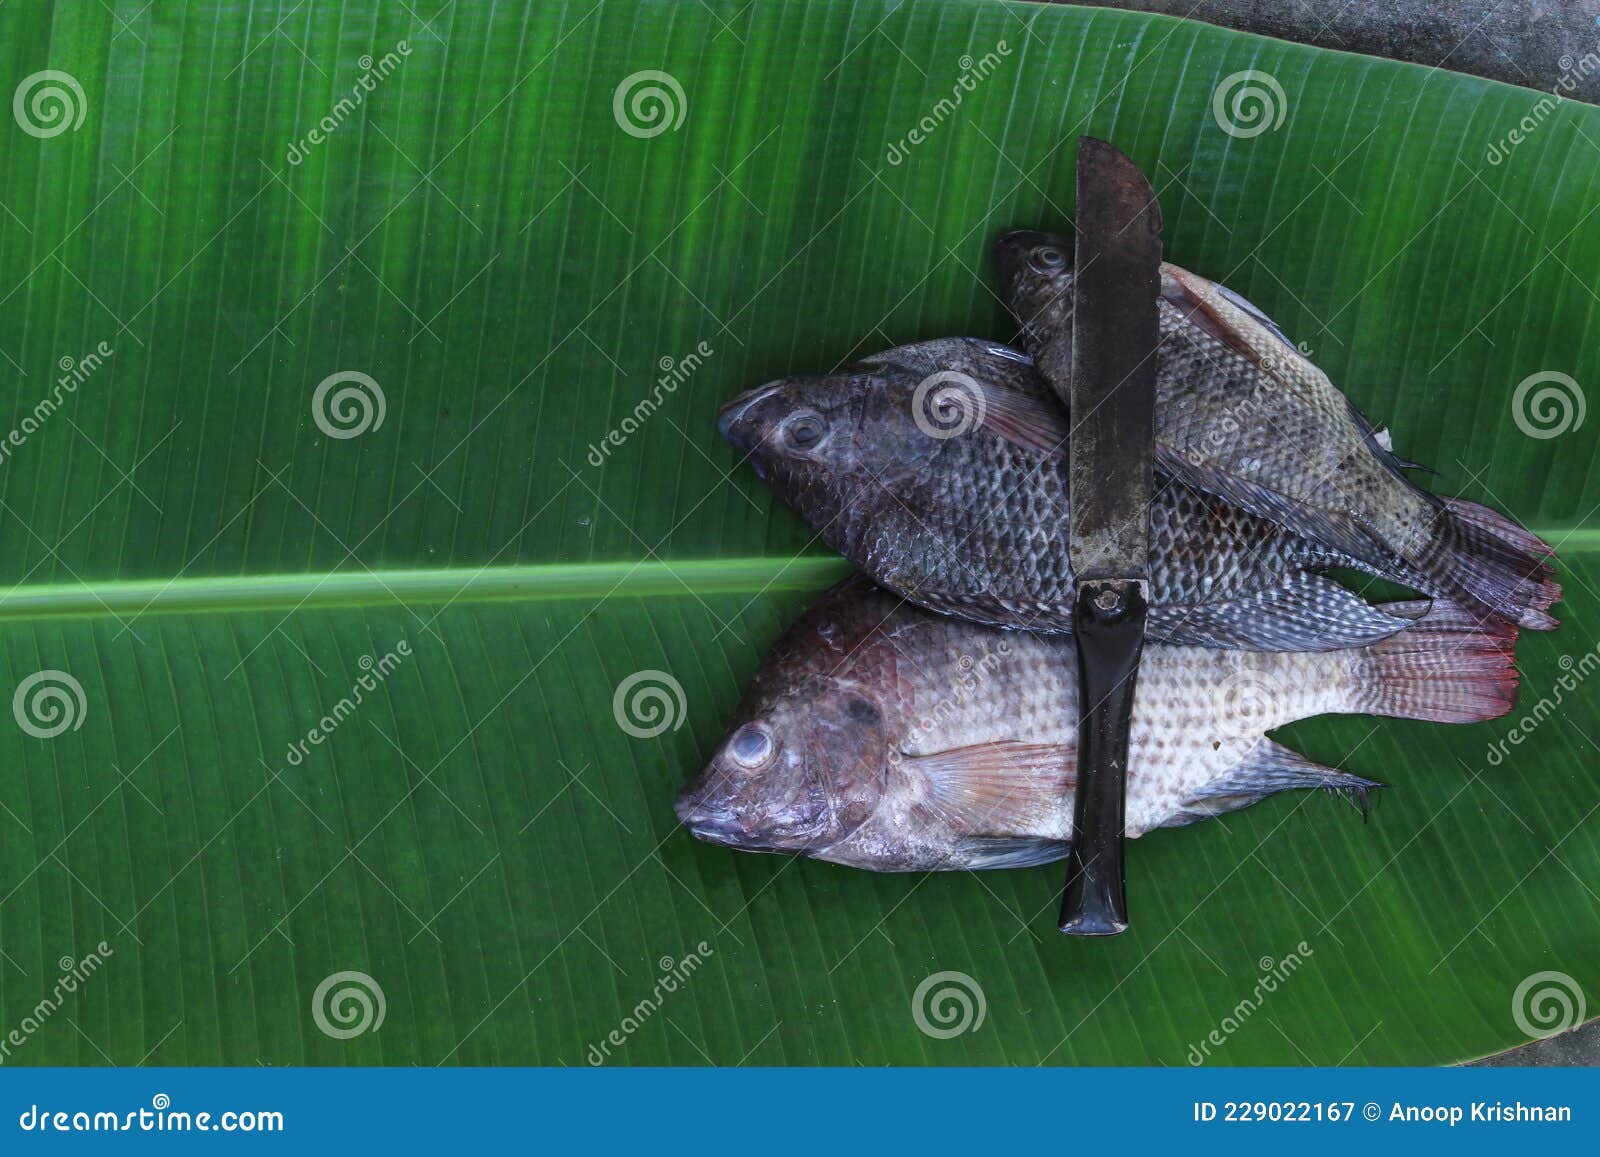 fresh tilapia fish